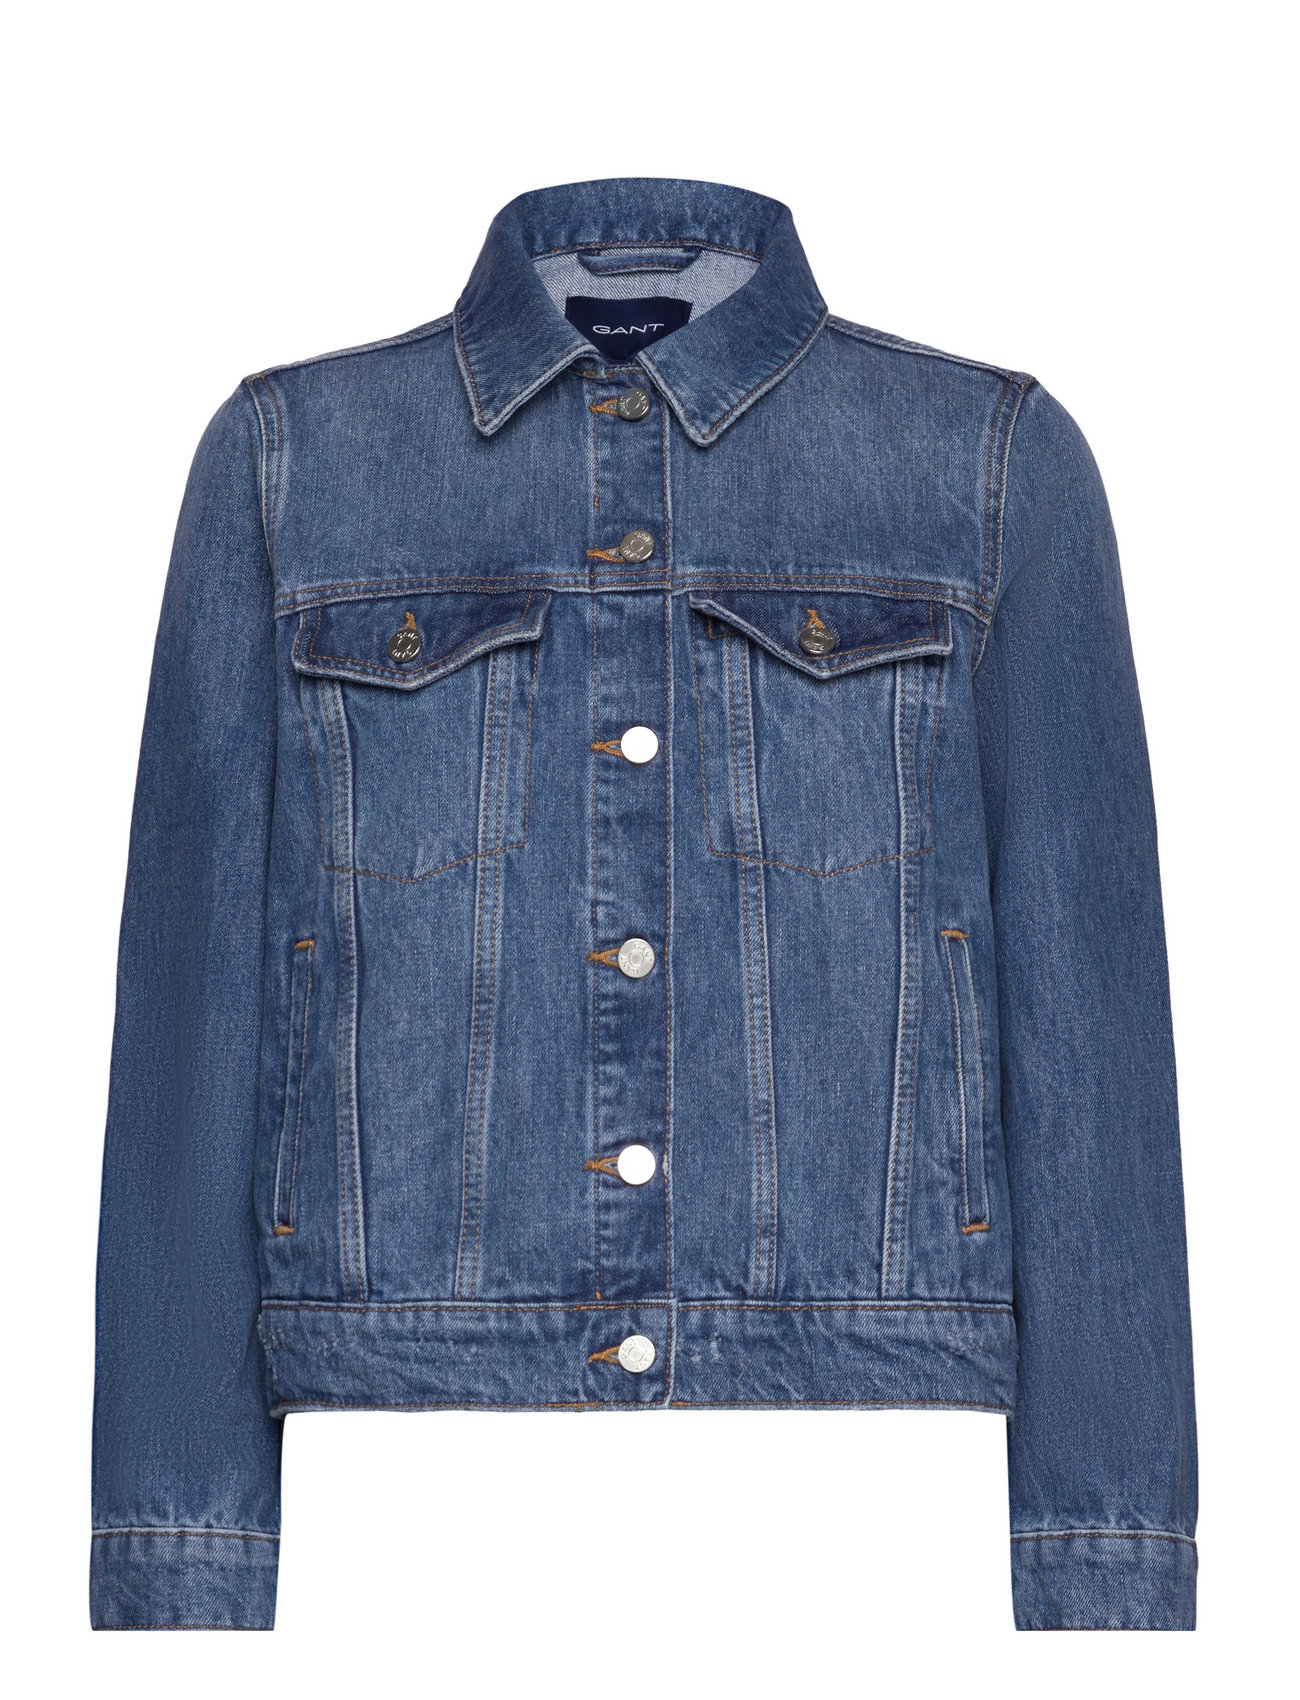 GANT Denim Jacket - 200 €. Buy Denim jackets from GANT online at Boozt ...